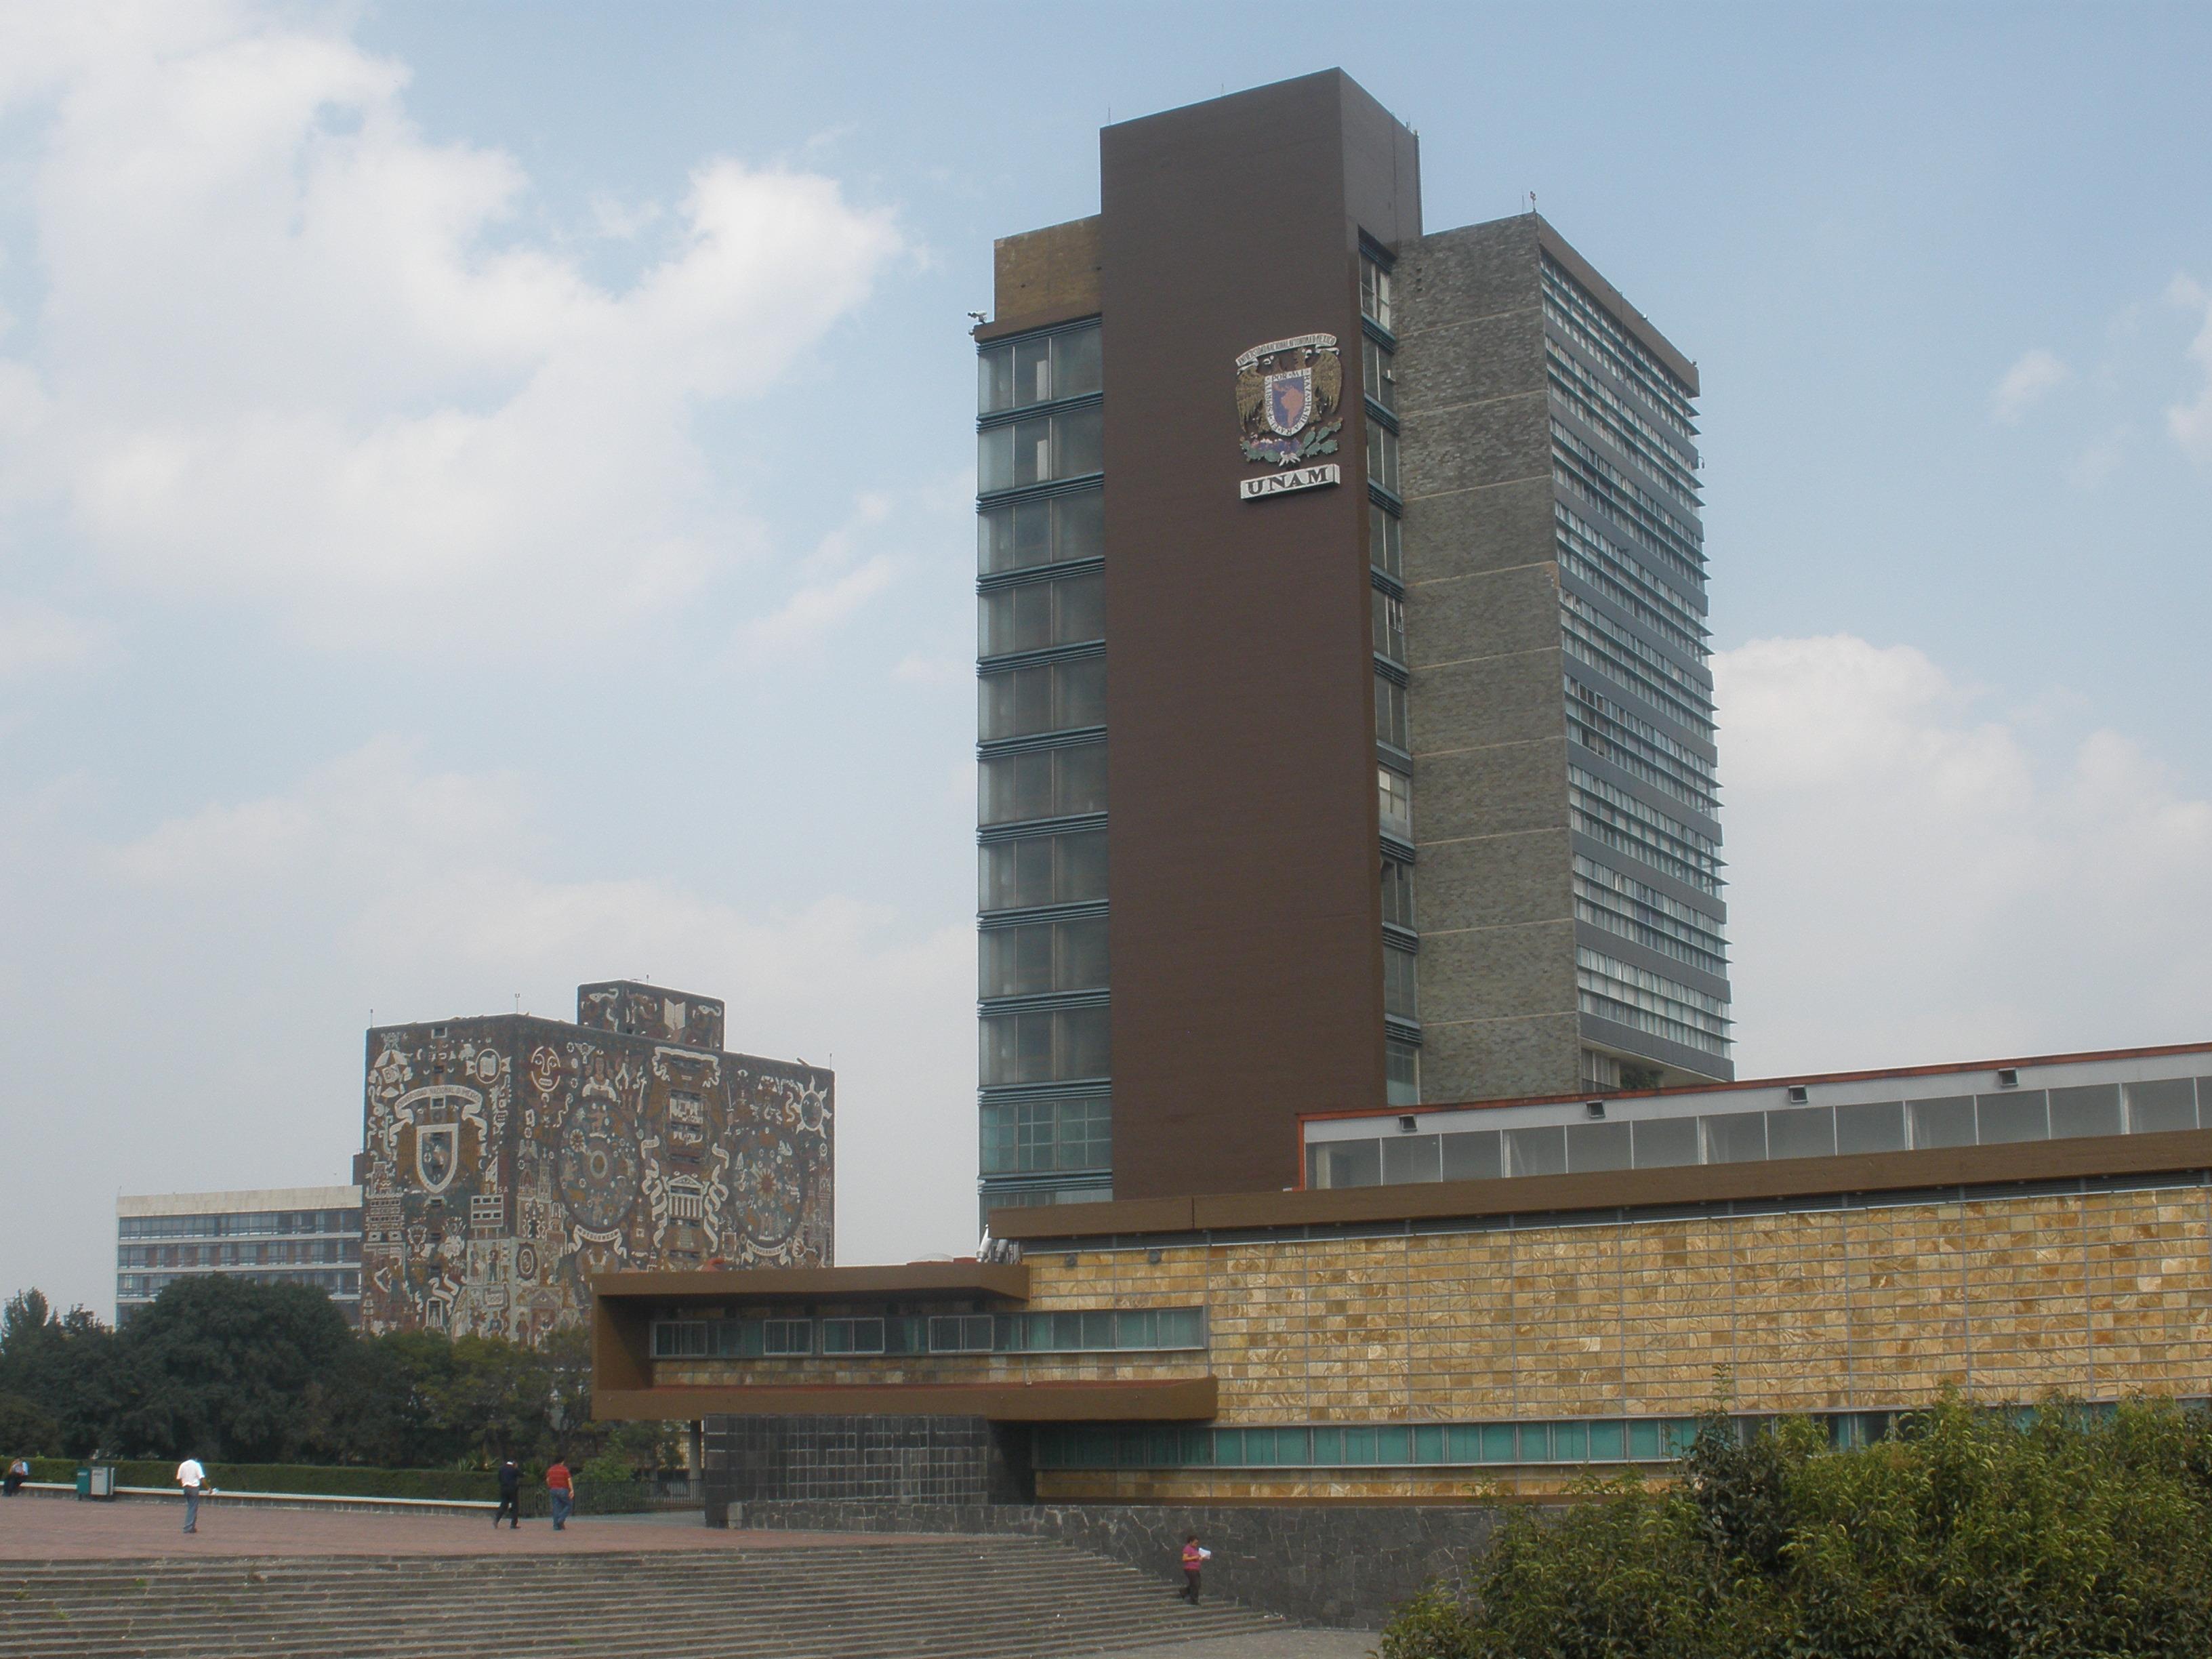 墨西哥国立自治大学大学城的核心校区 Central University City Campus of the Universidad Nacional Autónoma de México